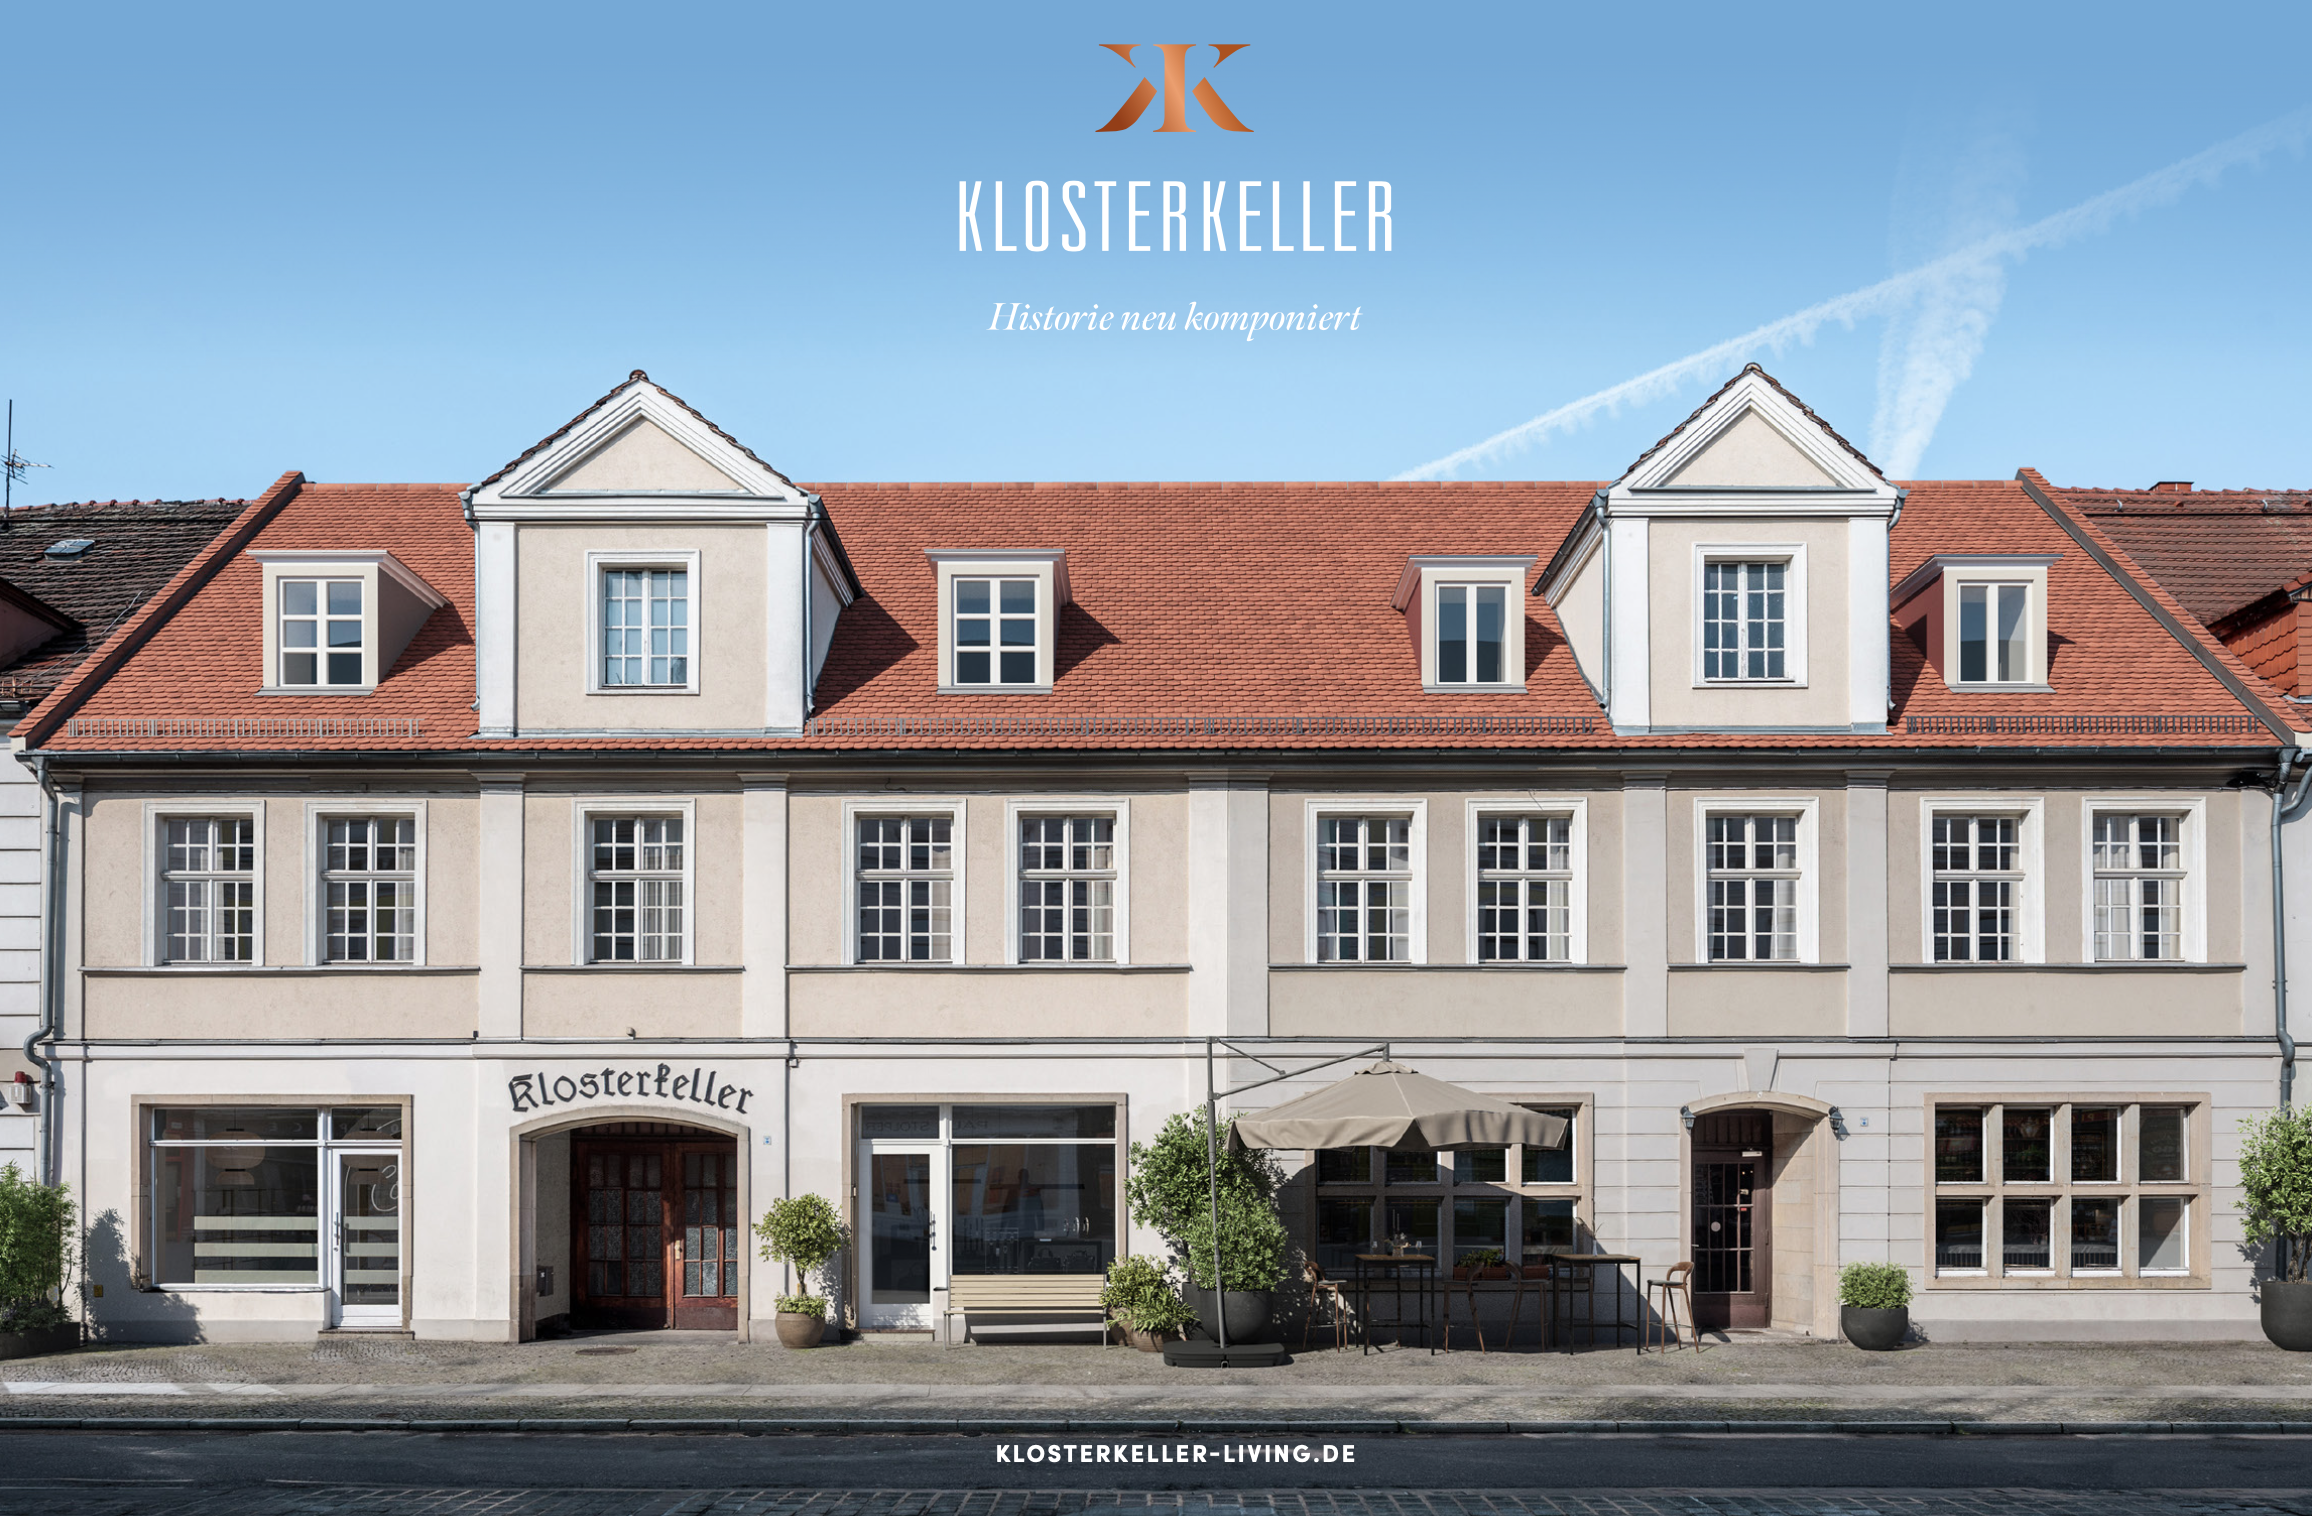 Klosterkeller / Markenentwicklung Real Estate